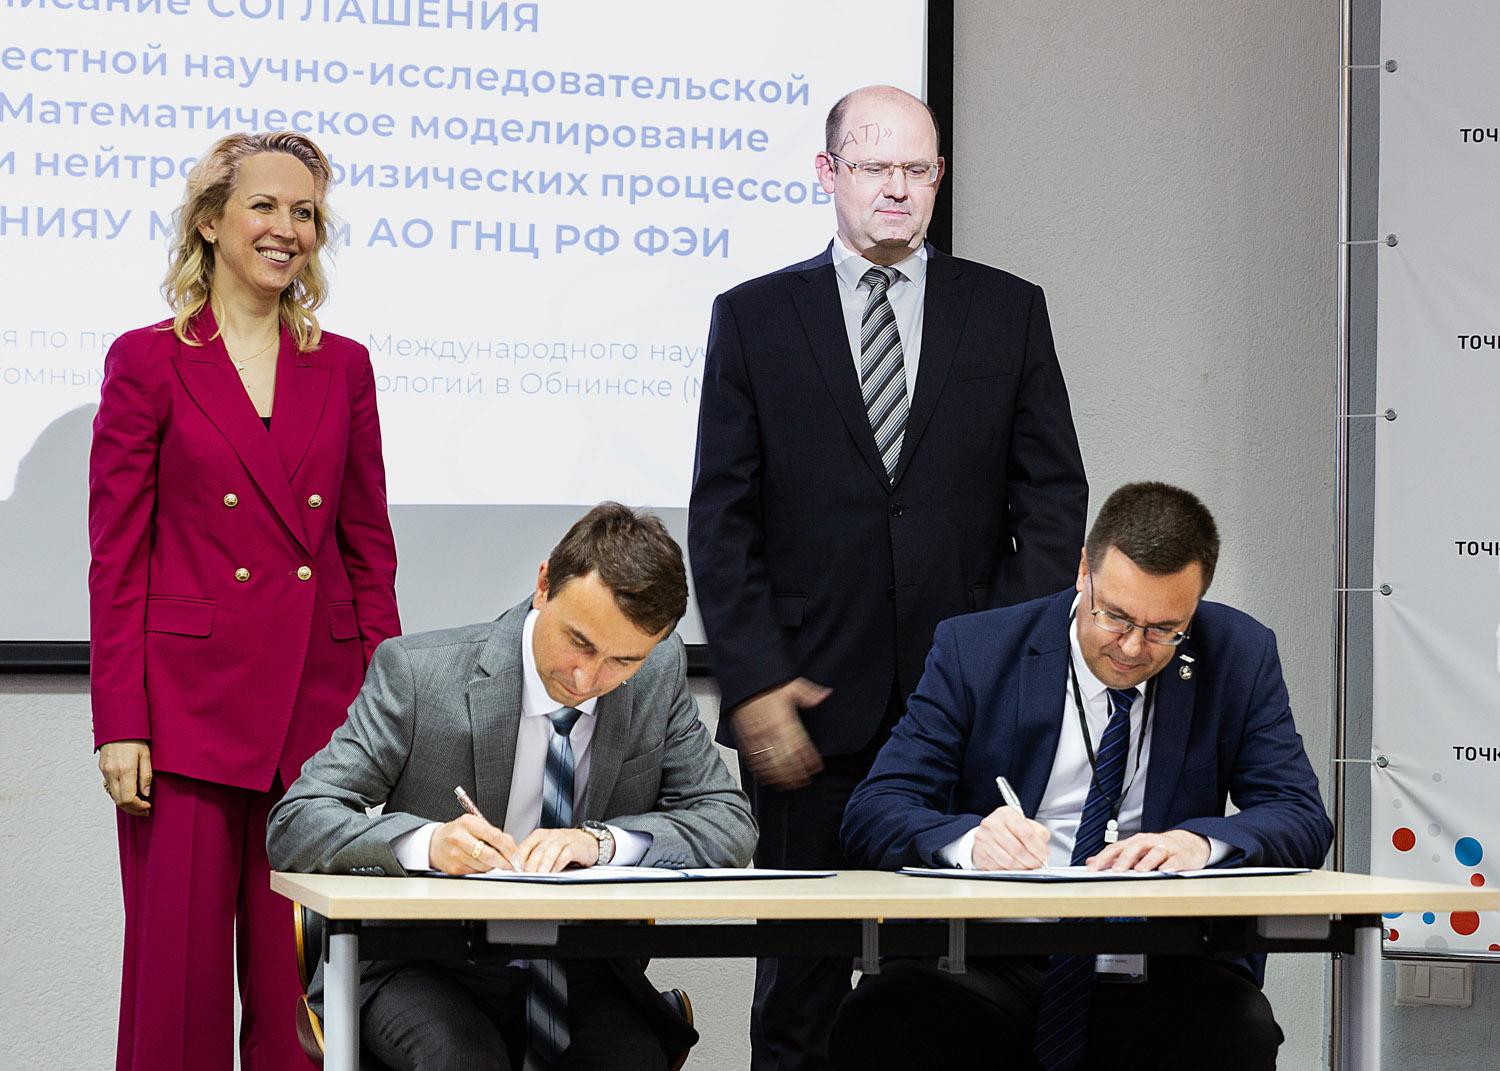 Росатом и Институт атомной энергии НИЯУ  МИФИ создадут совместную научную лабораторию в Обнинске